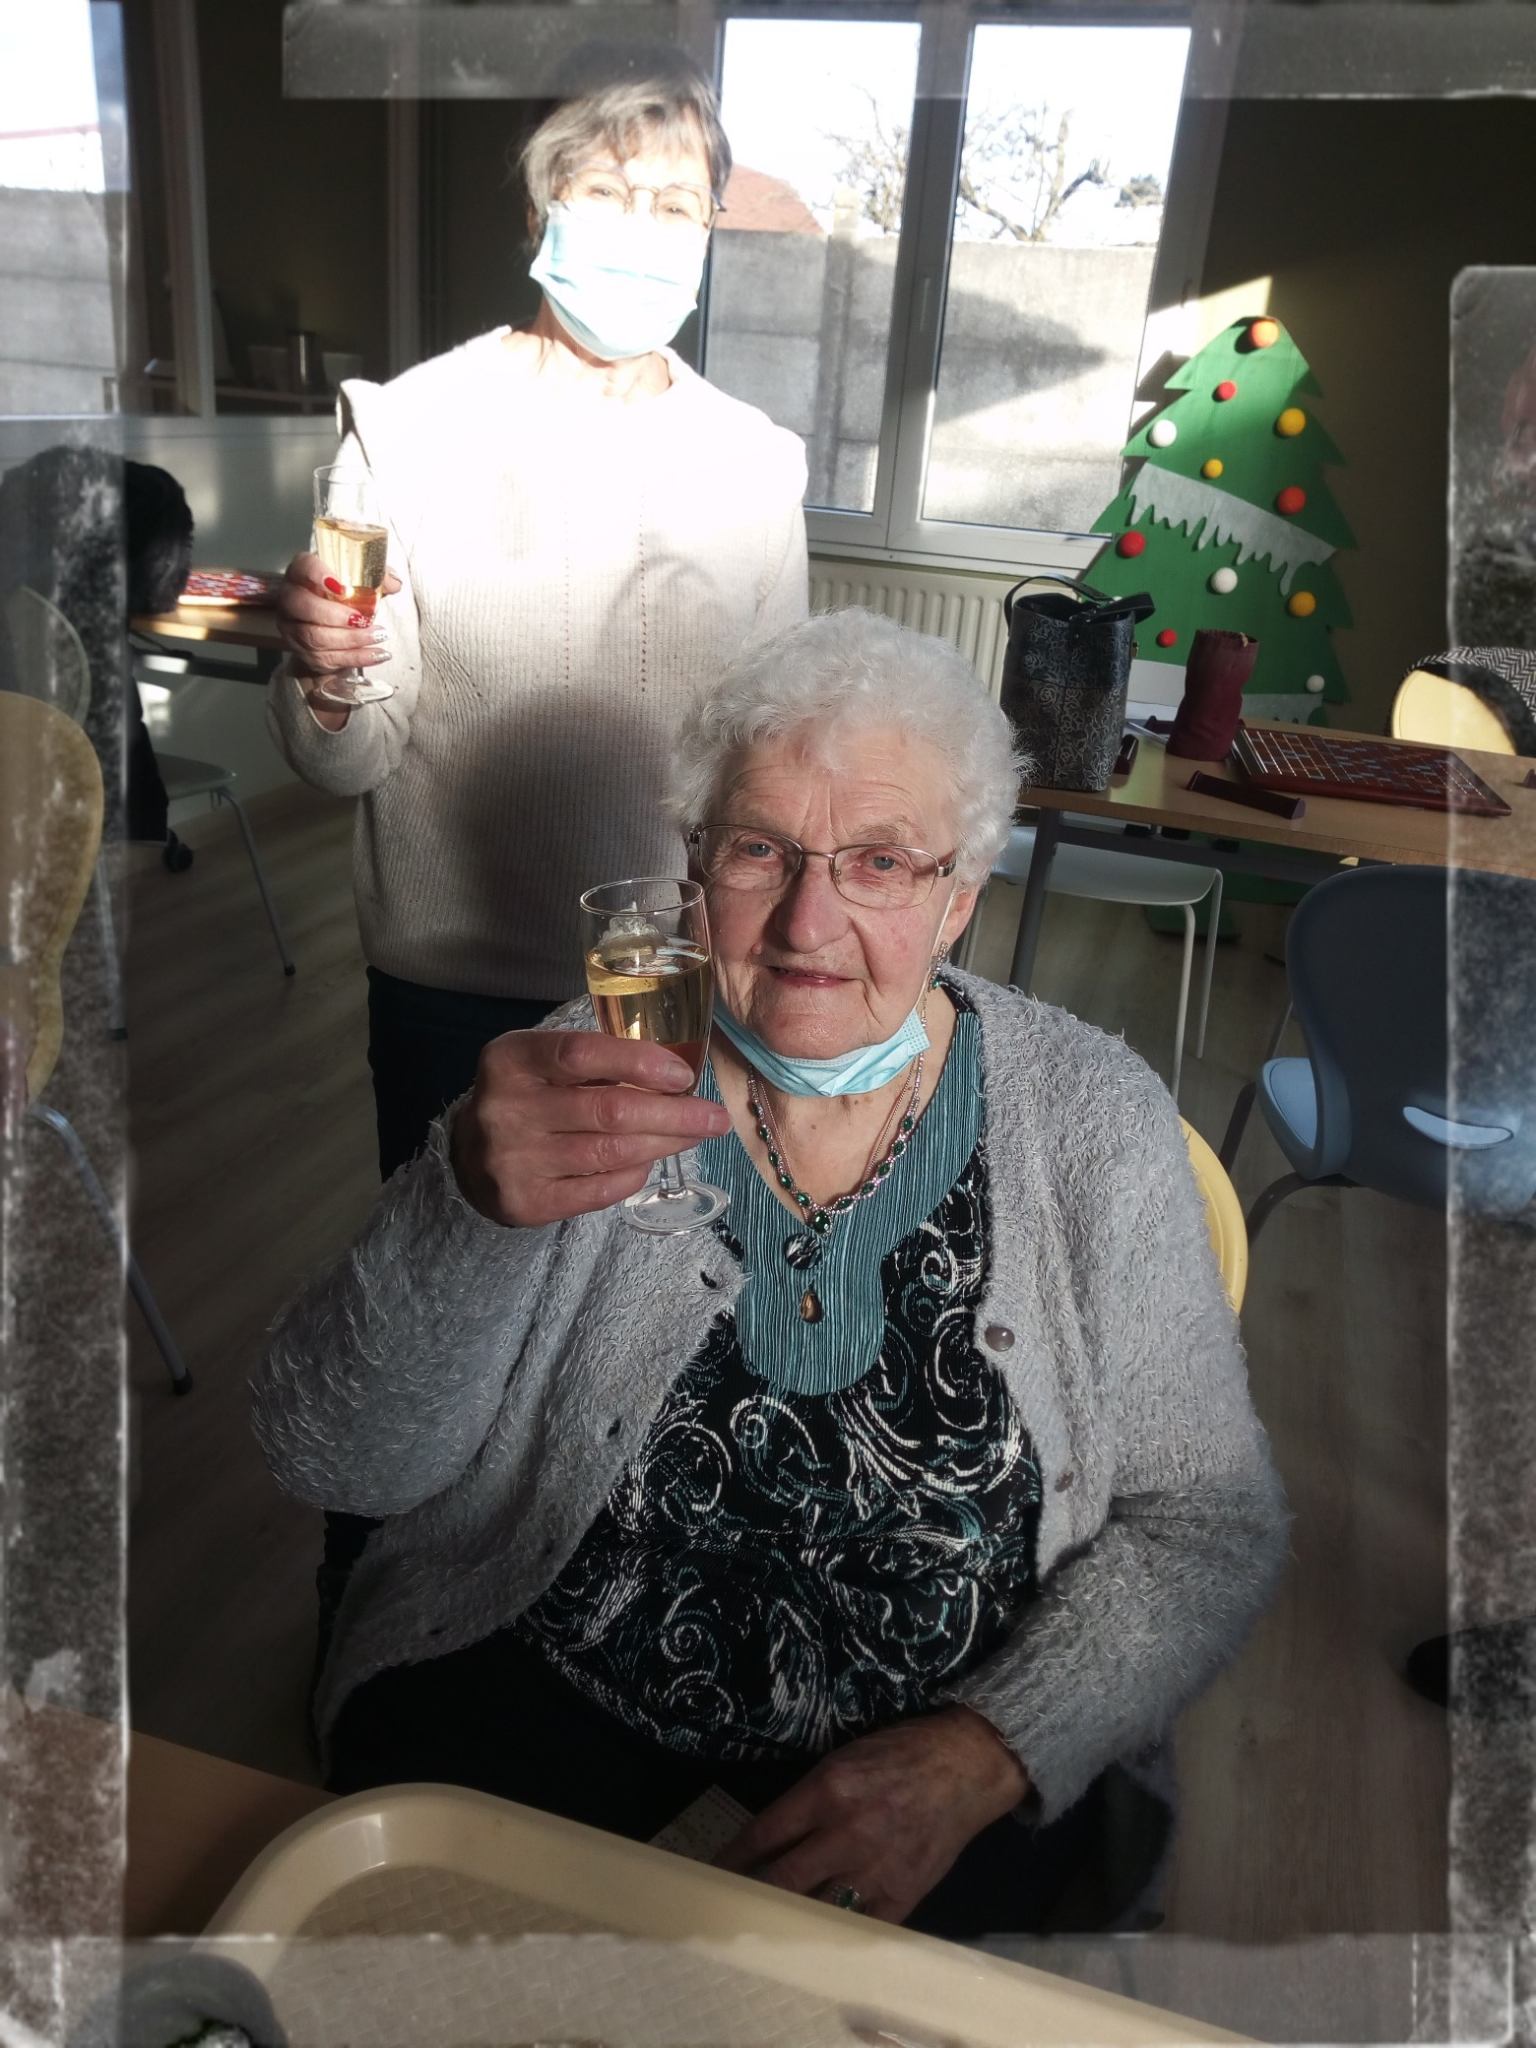 La doyenne de l’atelier scrabble fête ses 94 ans